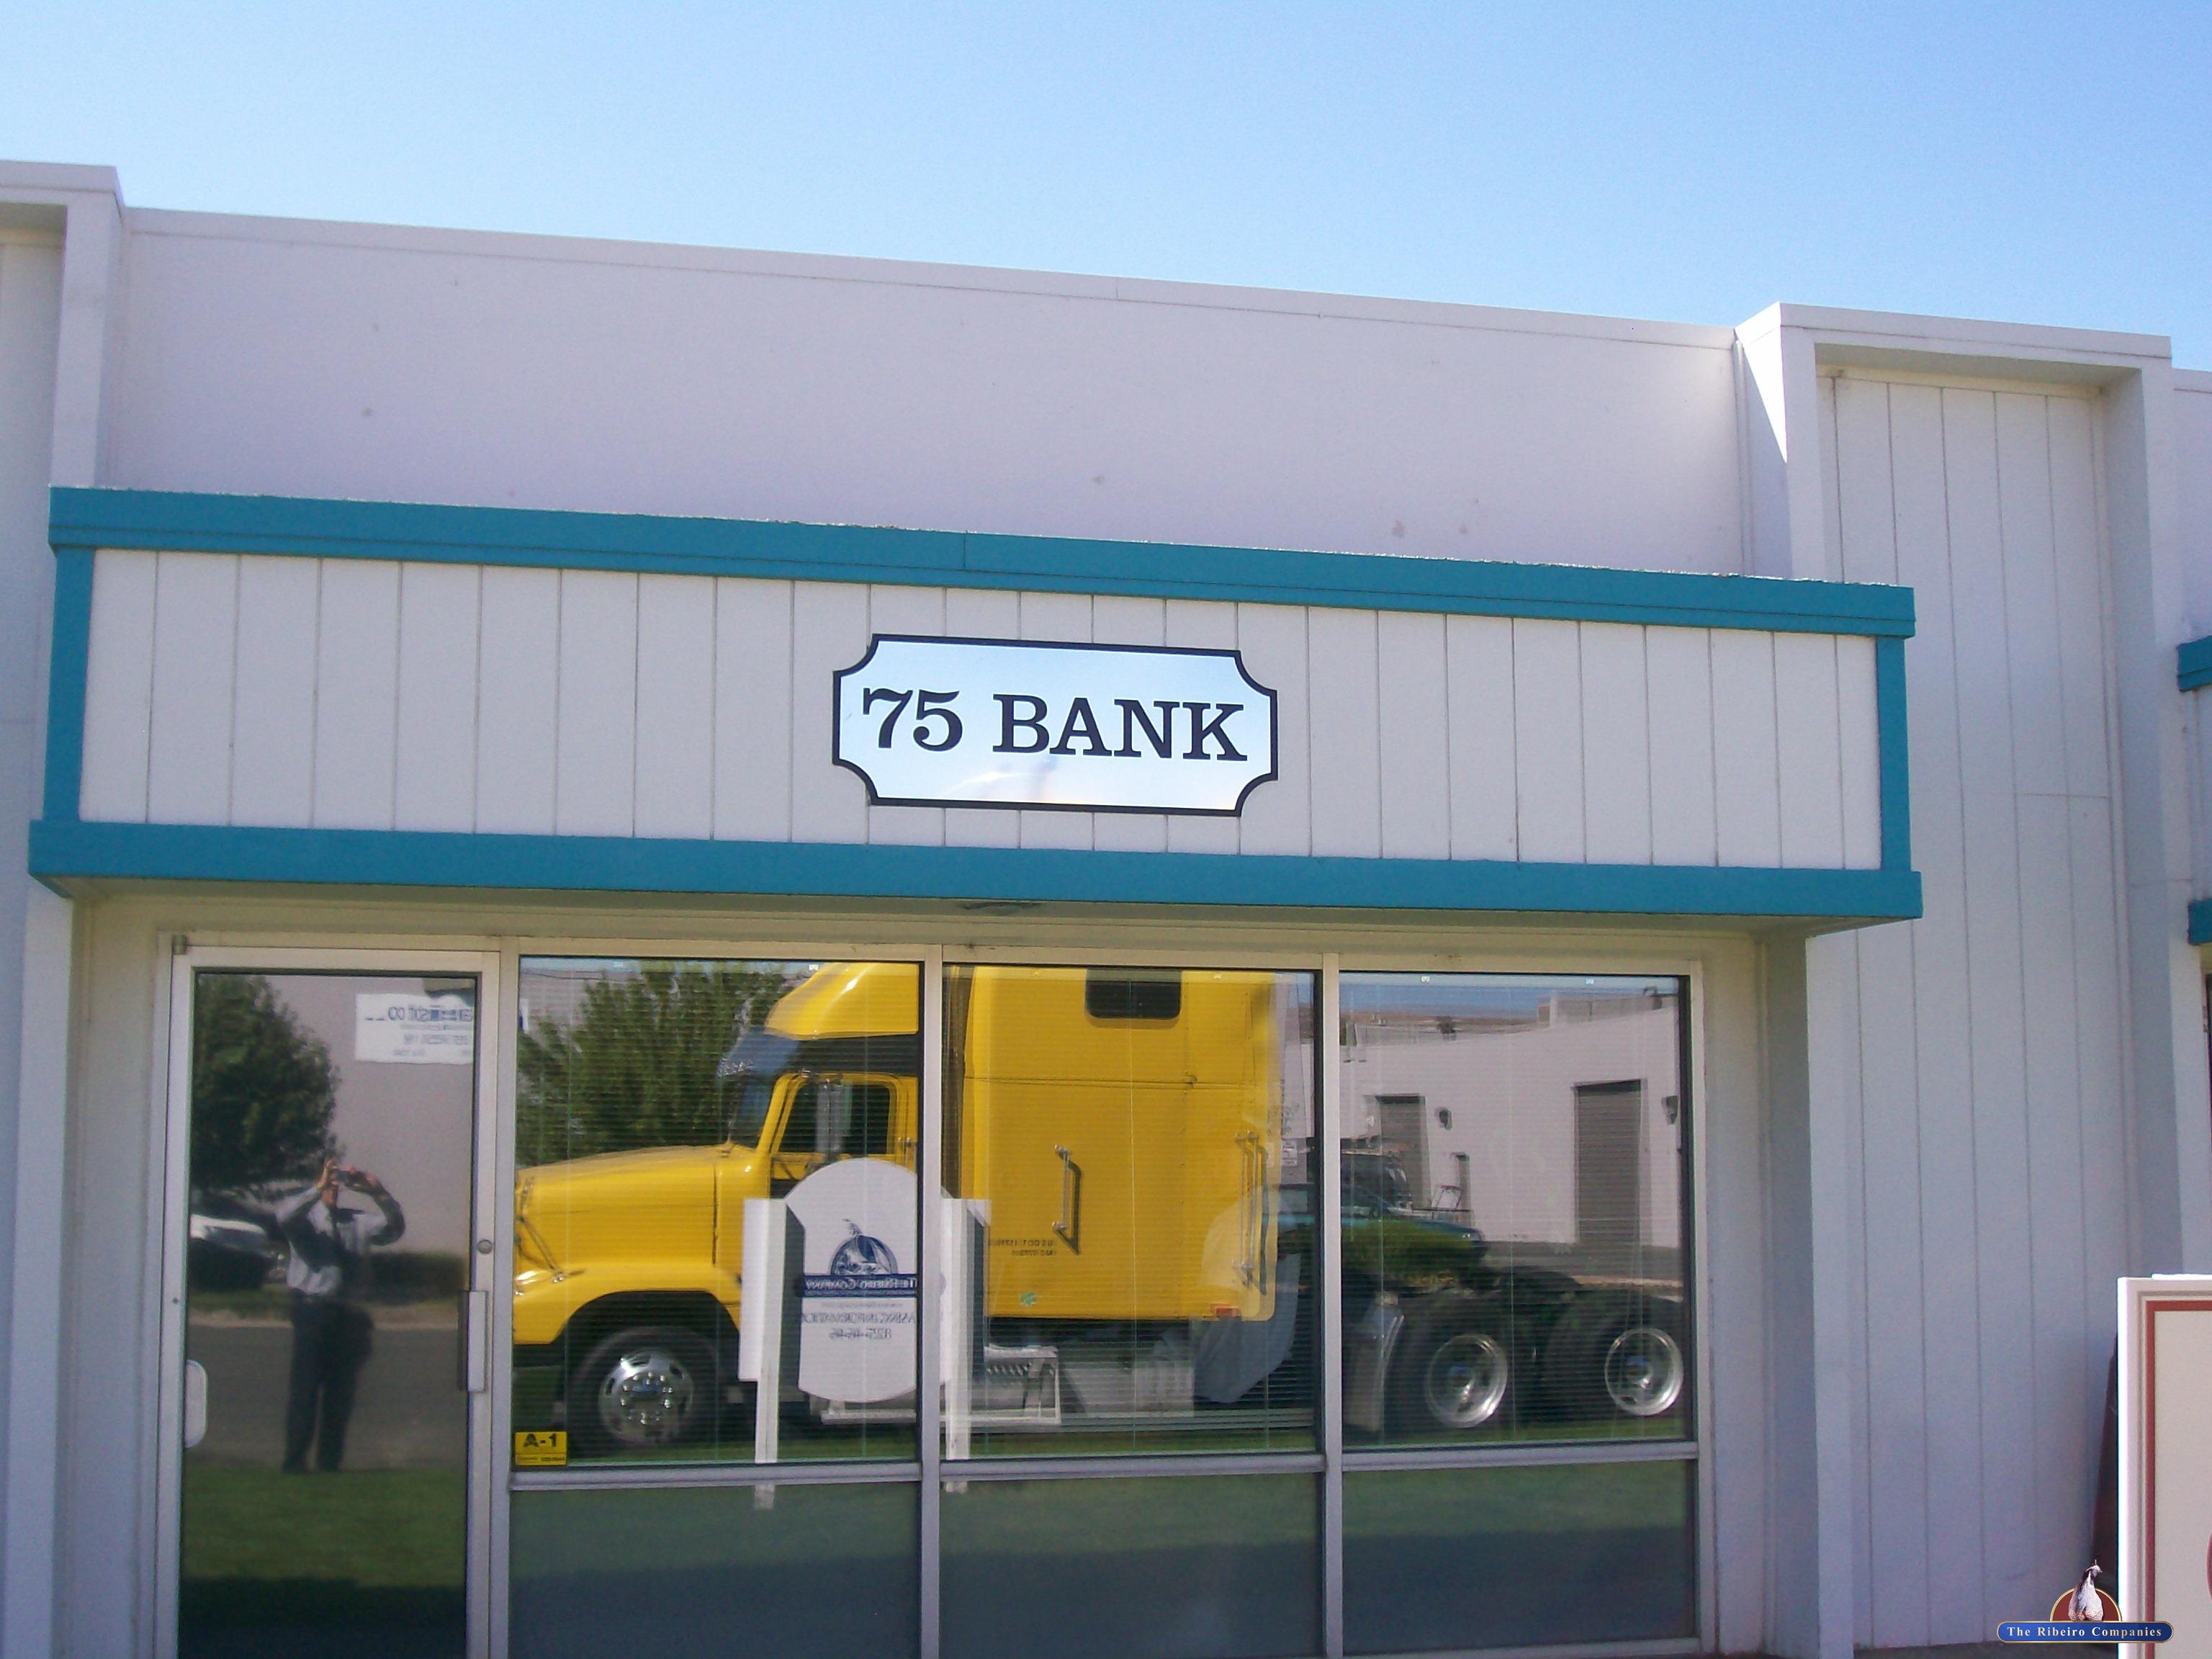 75 Bank St, Sparks, NV 89431 – Unit 16